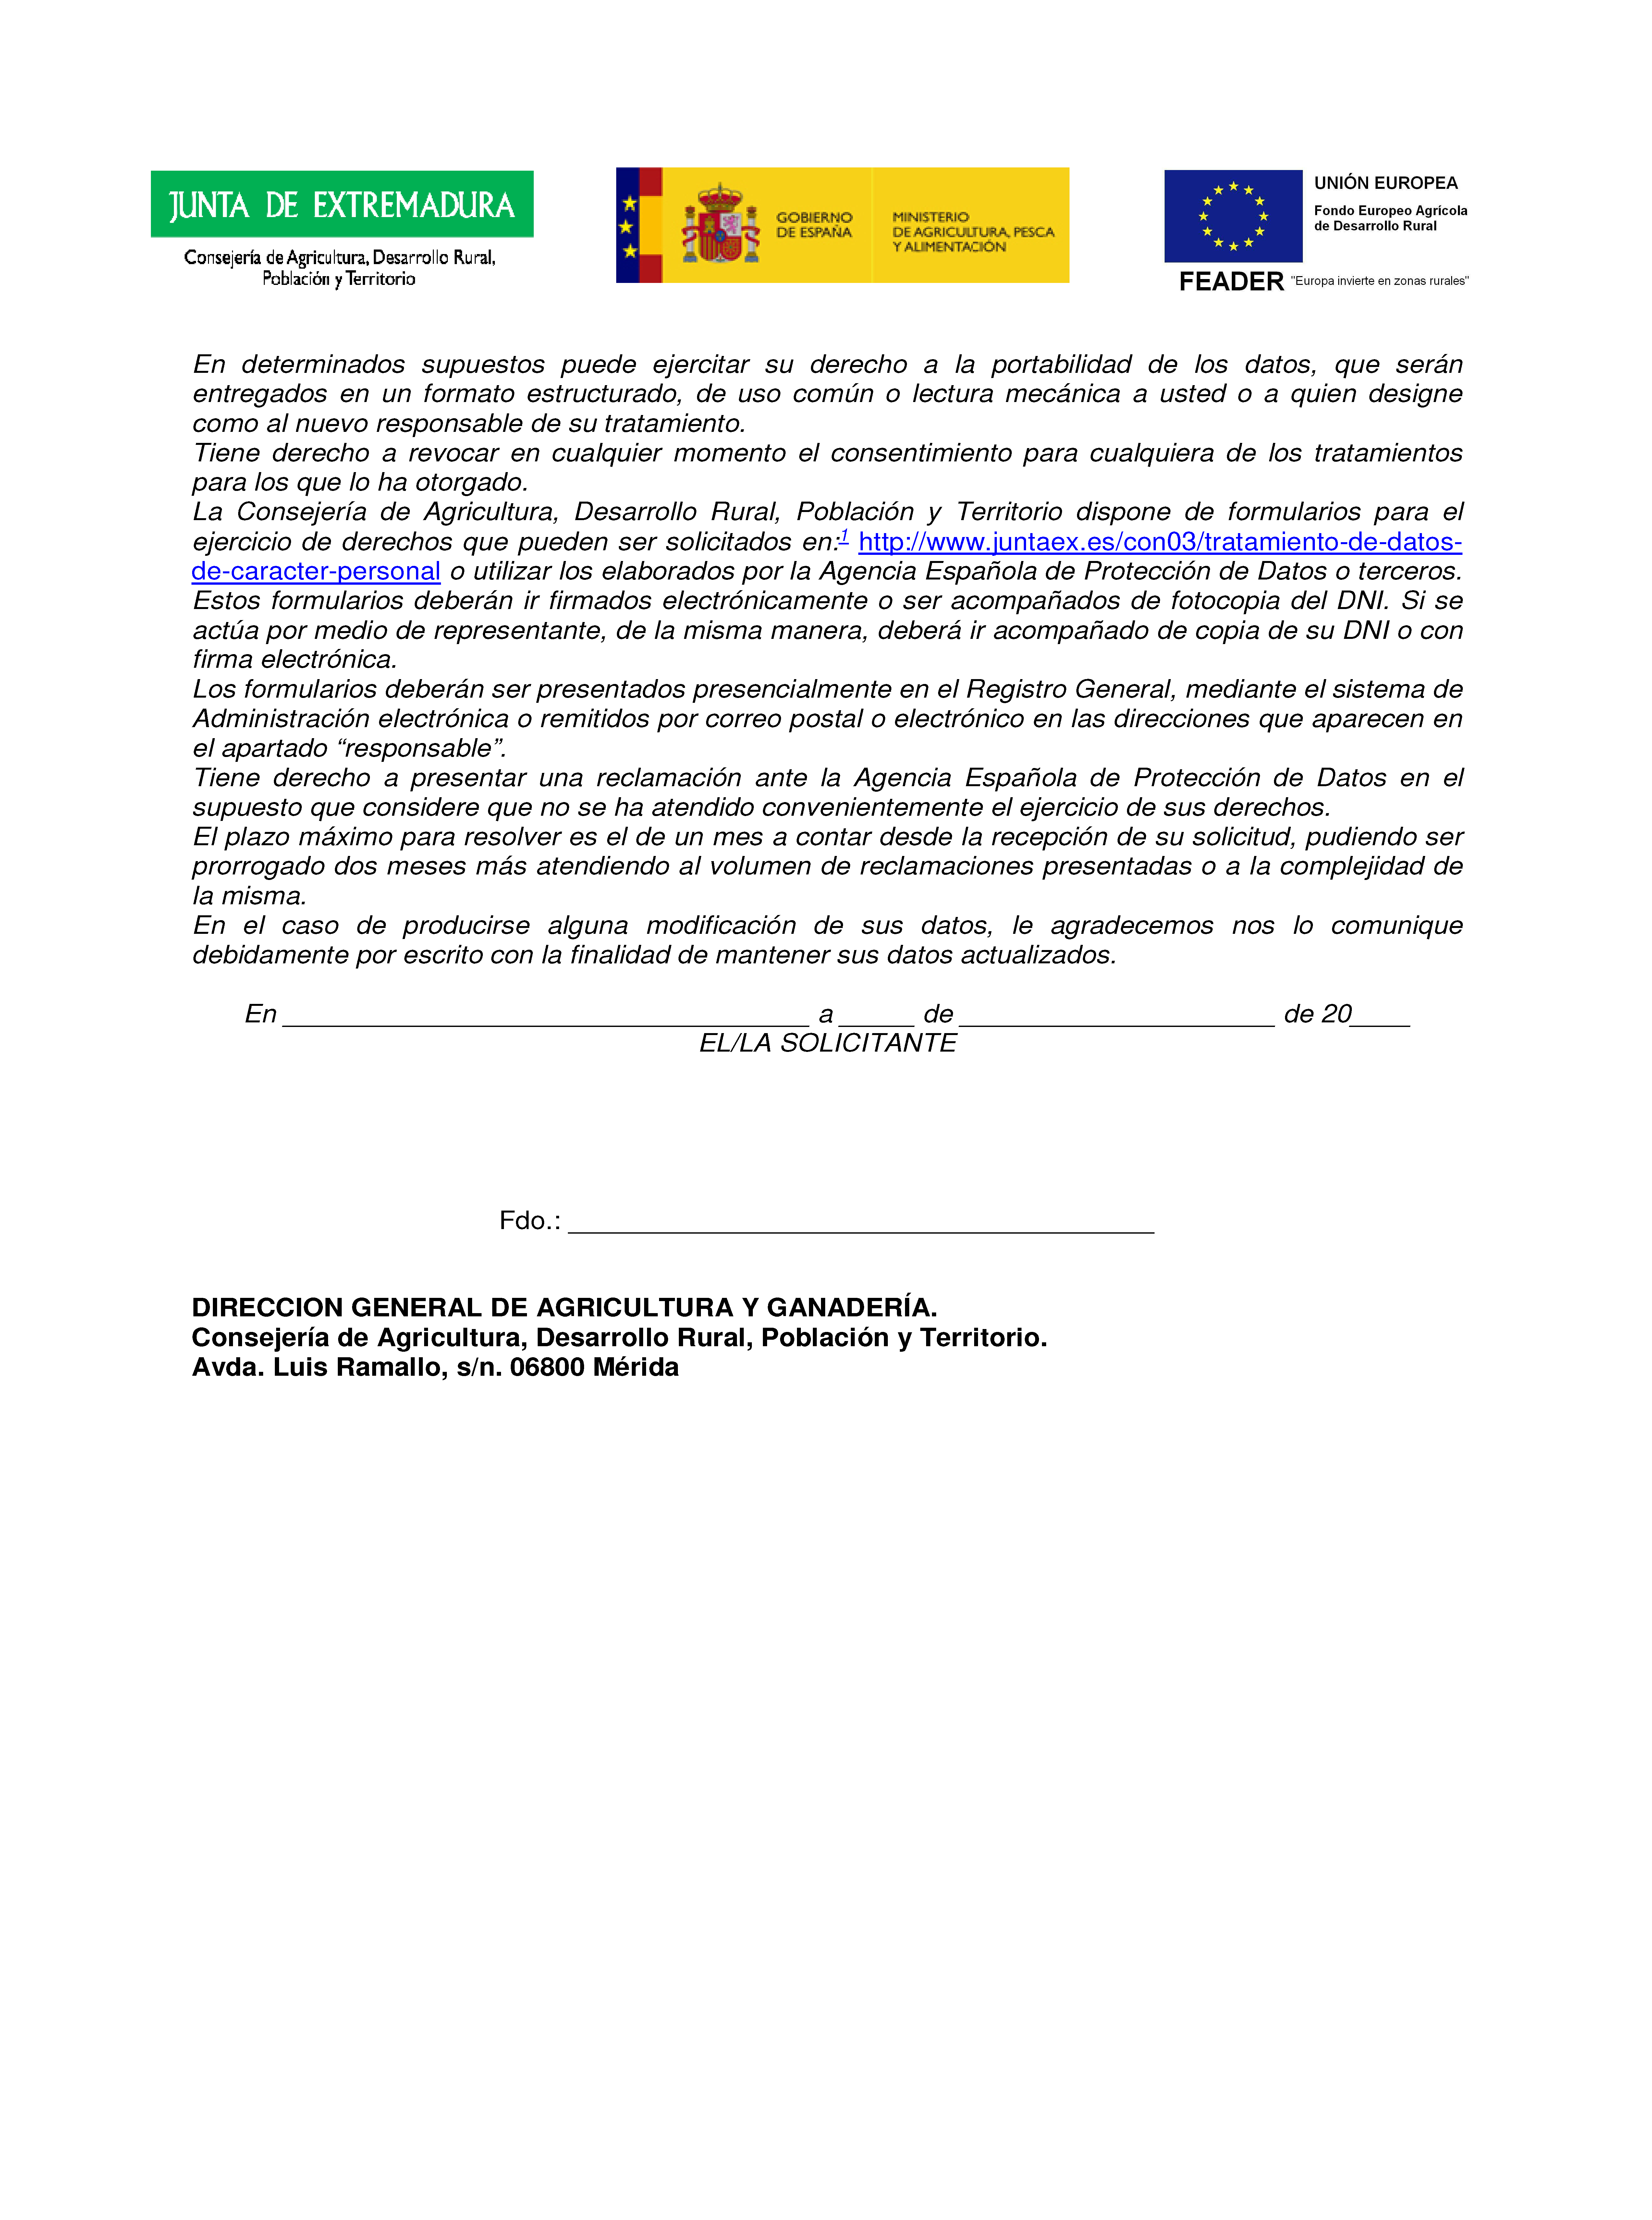 ANEXOS SOLICITUD DE AYUDAS A LOS REGIMENES DE CALIDAD DE LOS PRODUCTOS Pag 12